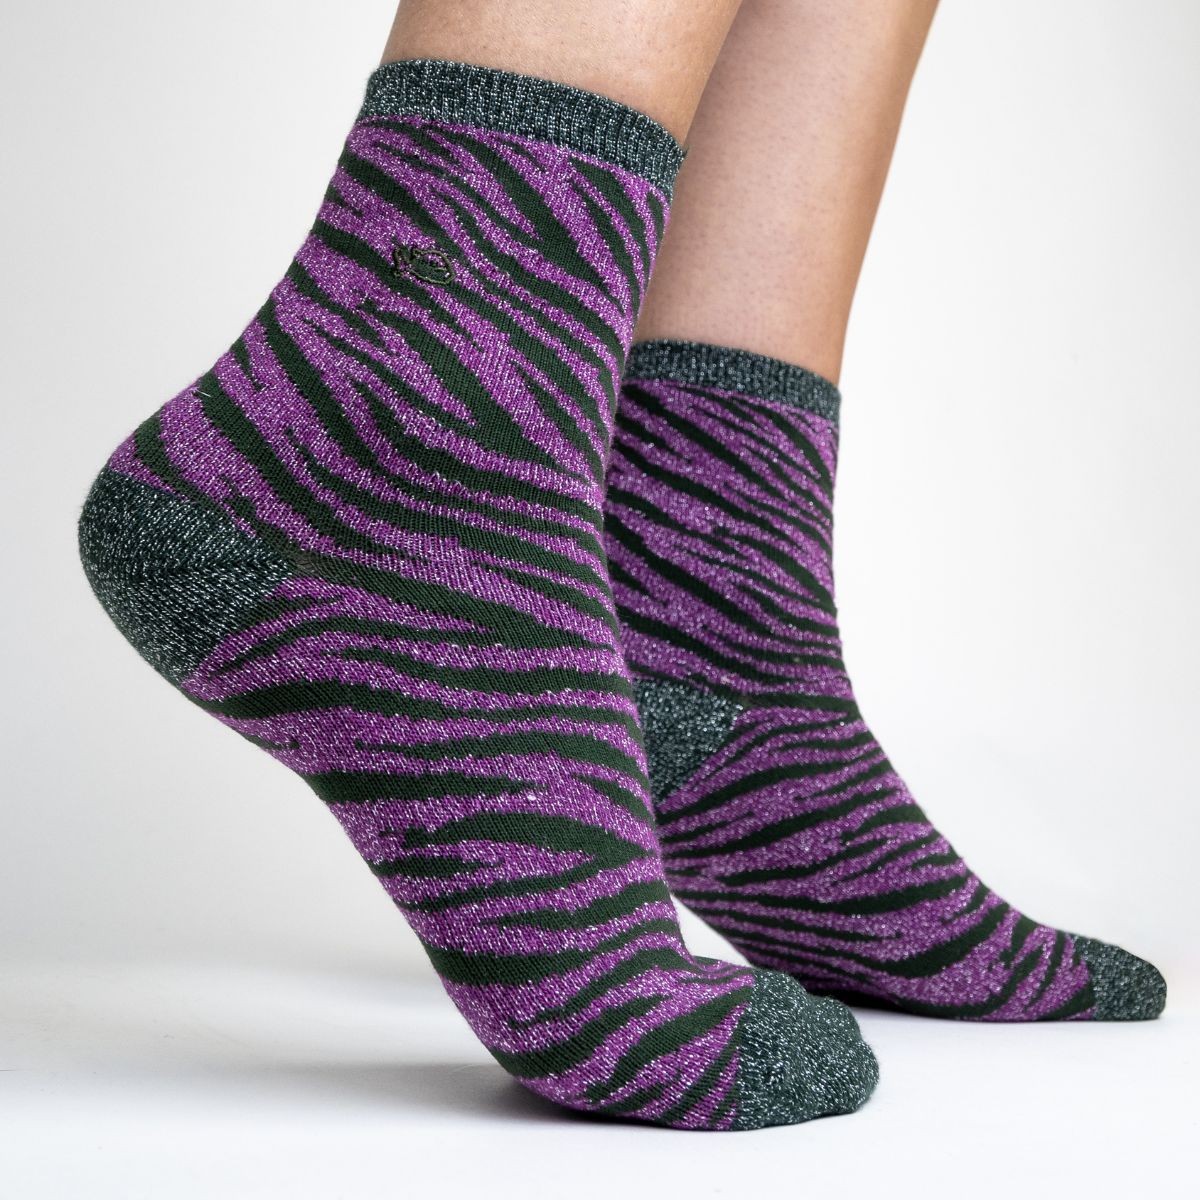 Glitter socks in combed cotton Zebra - Green and purple